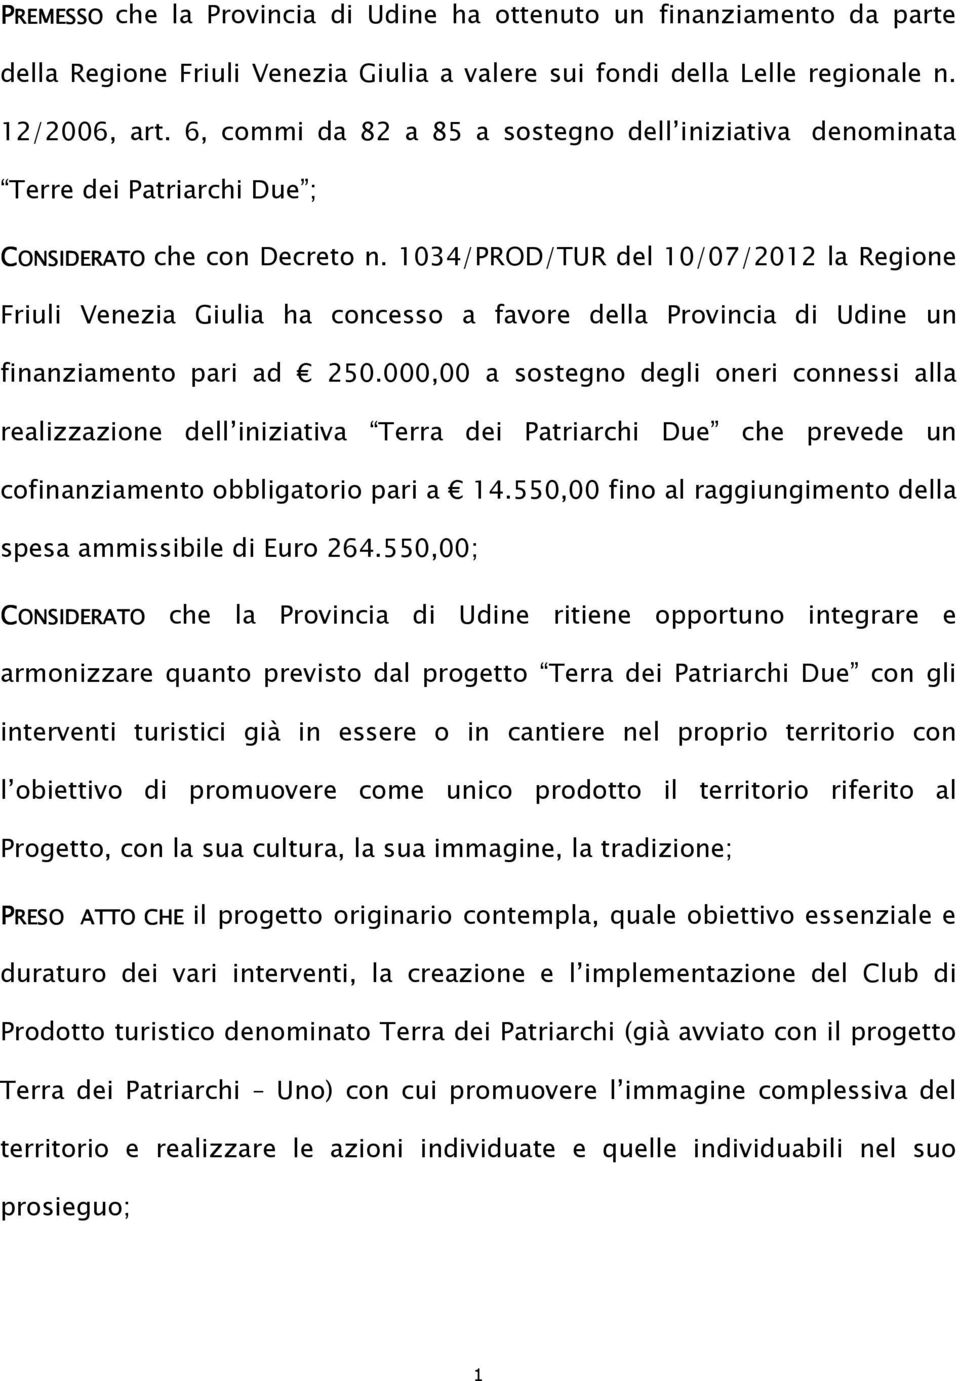 1034/PROD/TUR del 10/07/2012 la Regione Friuli Venezia Giulia ha concesso a favore della Provincia di Udine un finanziamento pari ad 250.